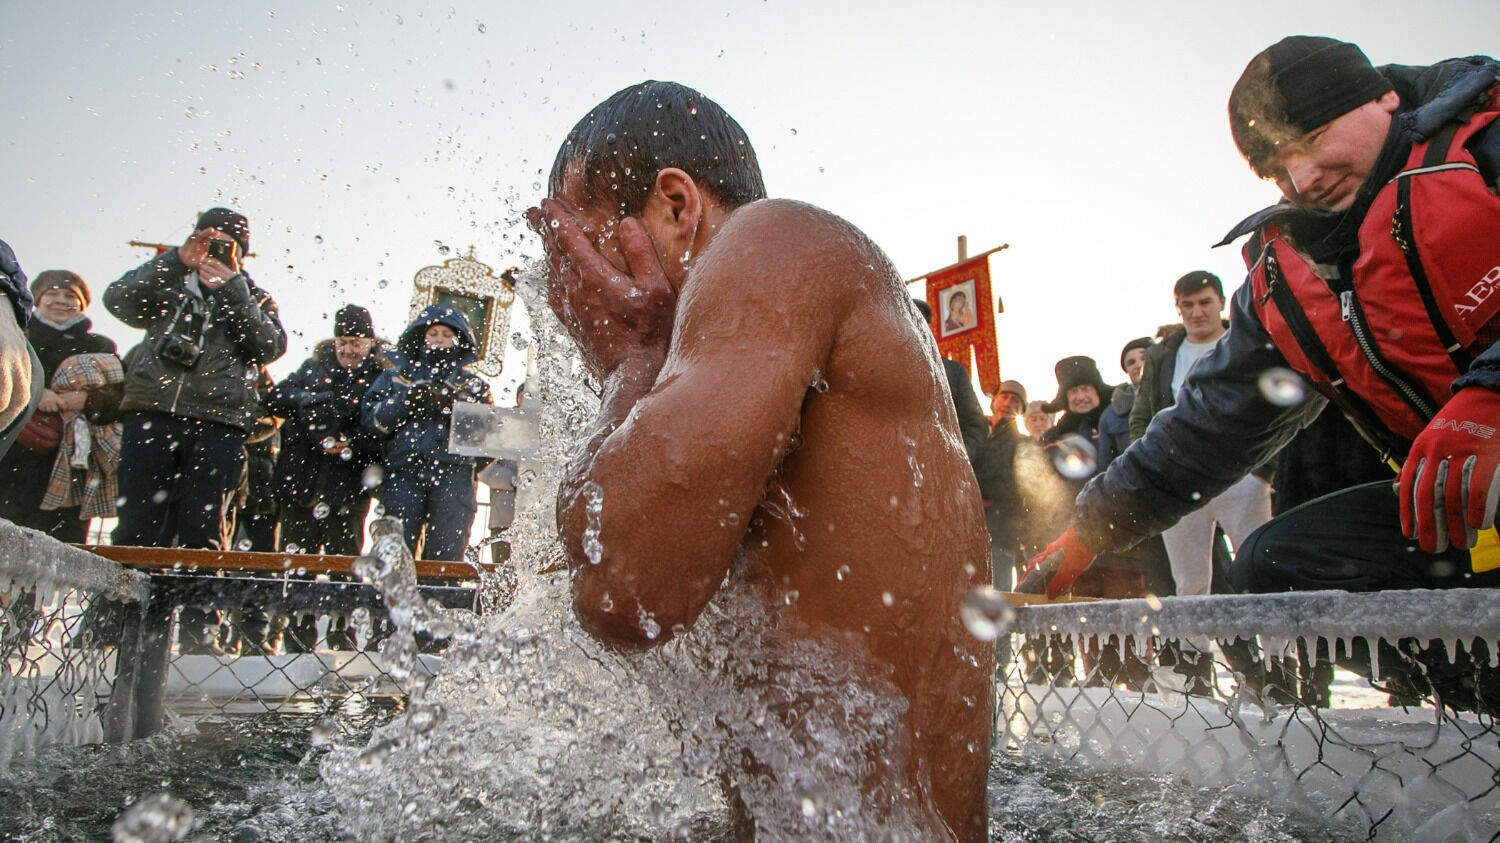 Проруби на Крещение в Челябинске: правила купания и меры безопасности